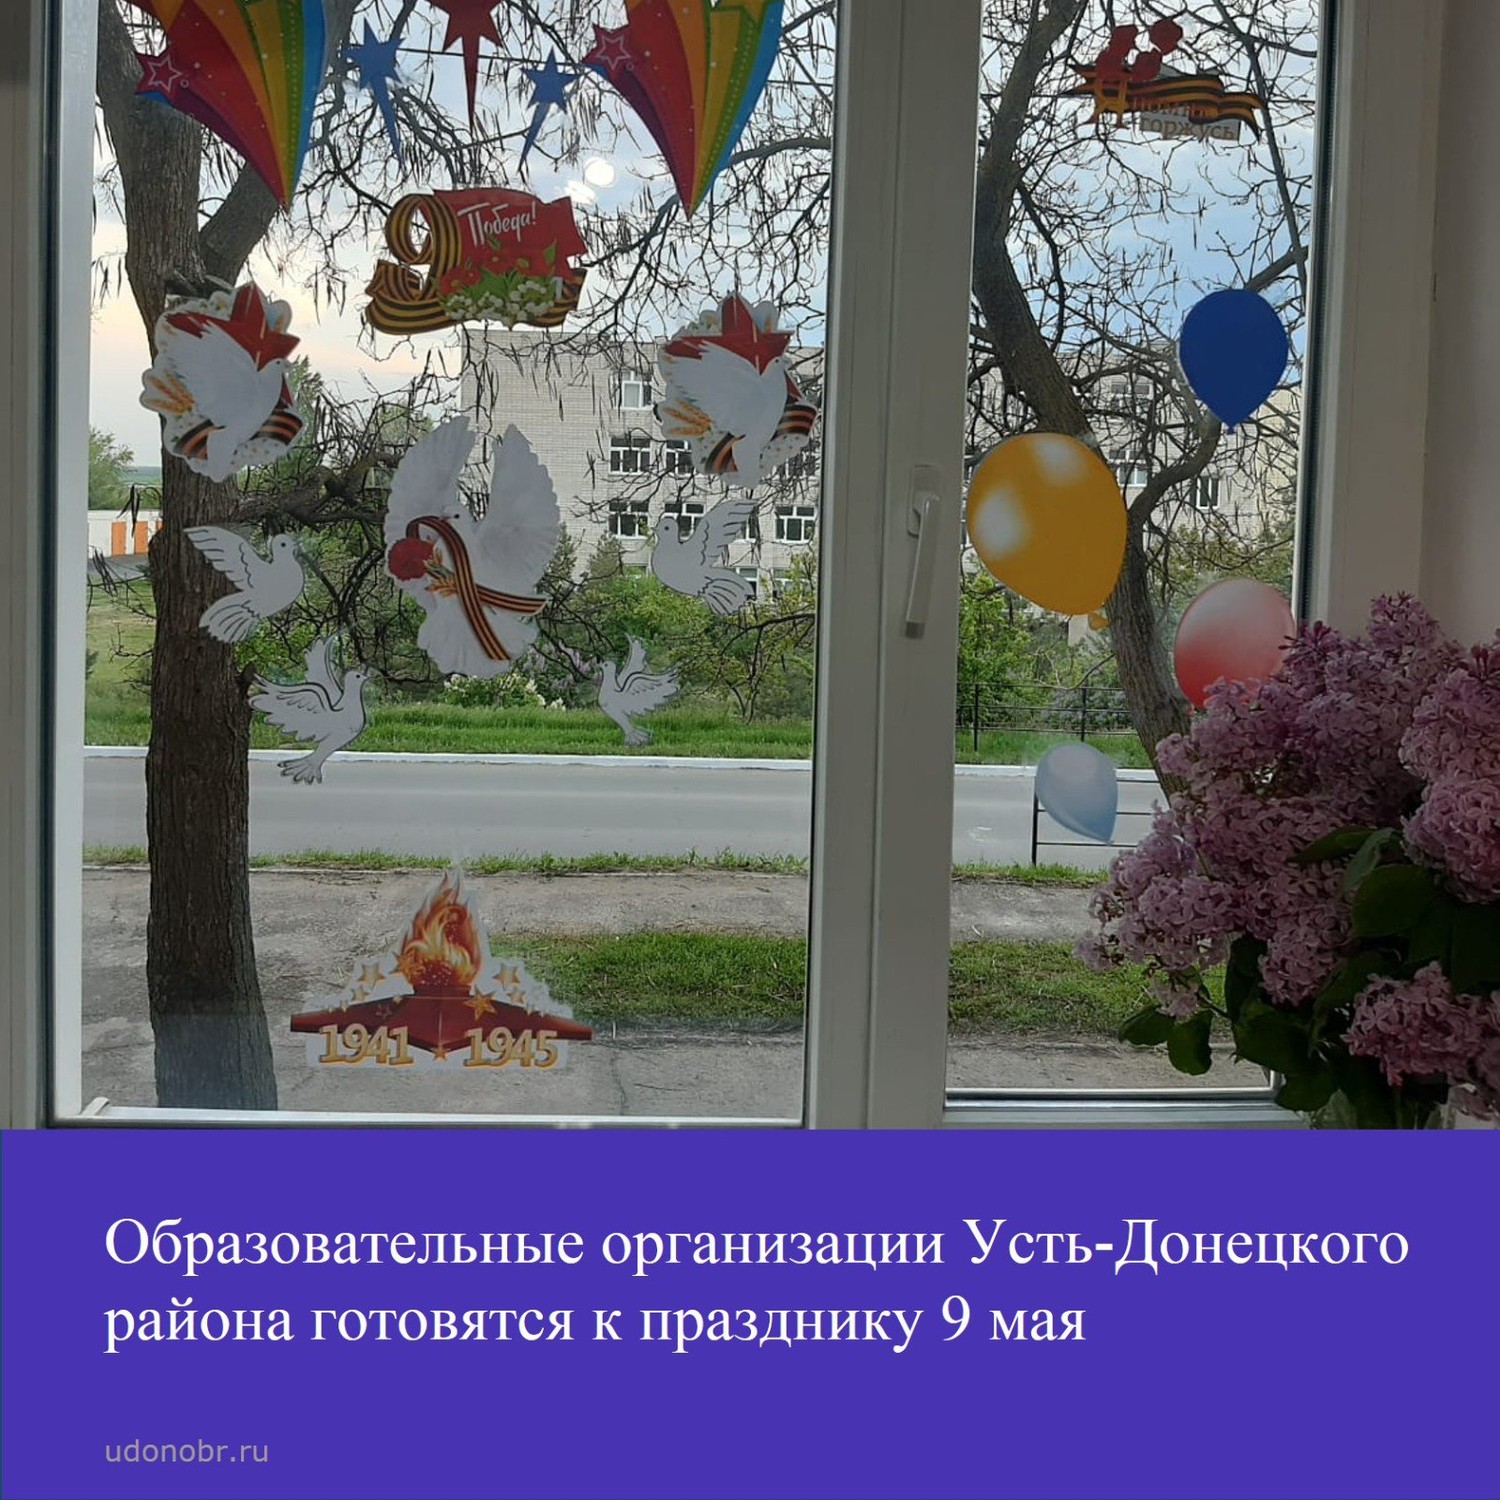 Образовательные организации Усть-Донецкого района готовятся к празднику 9 мая